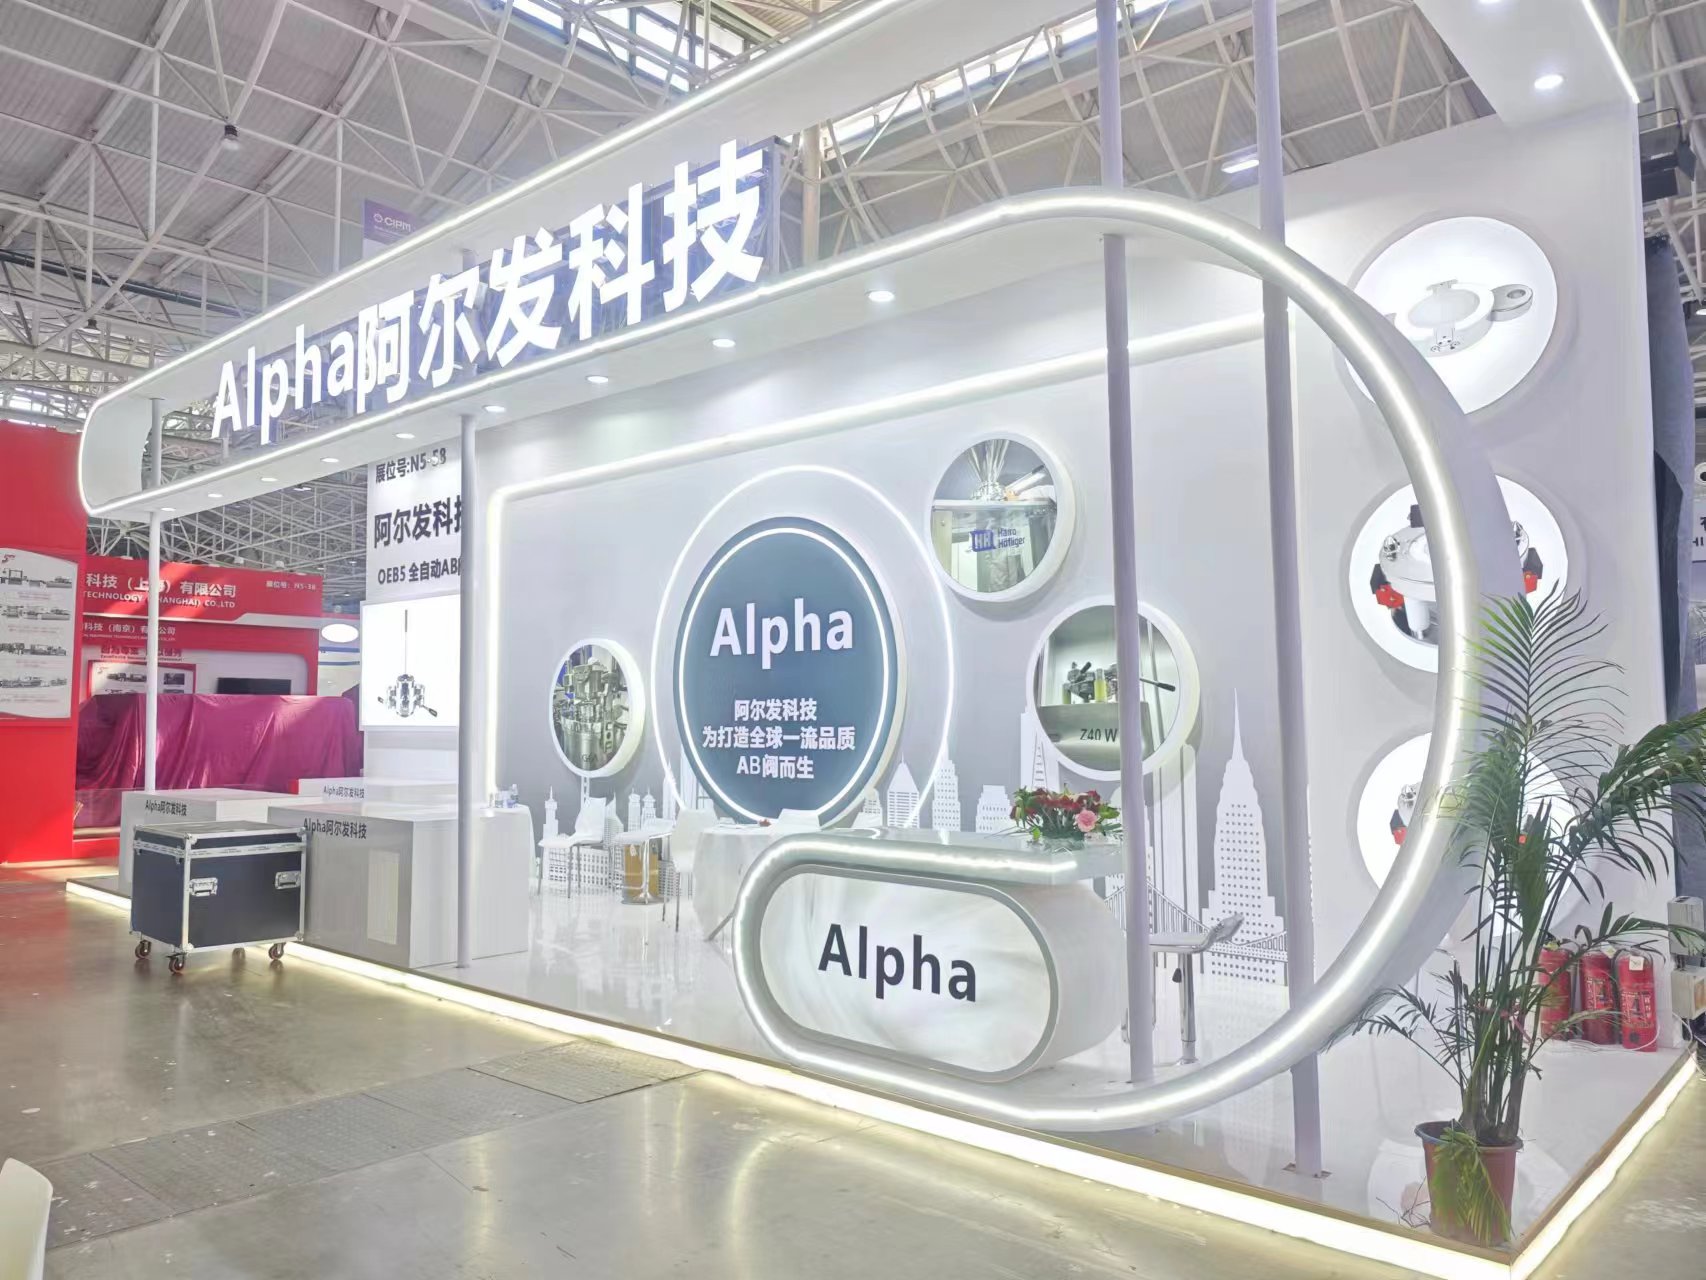 Alpha Technology (Beijing) Co., Ltd